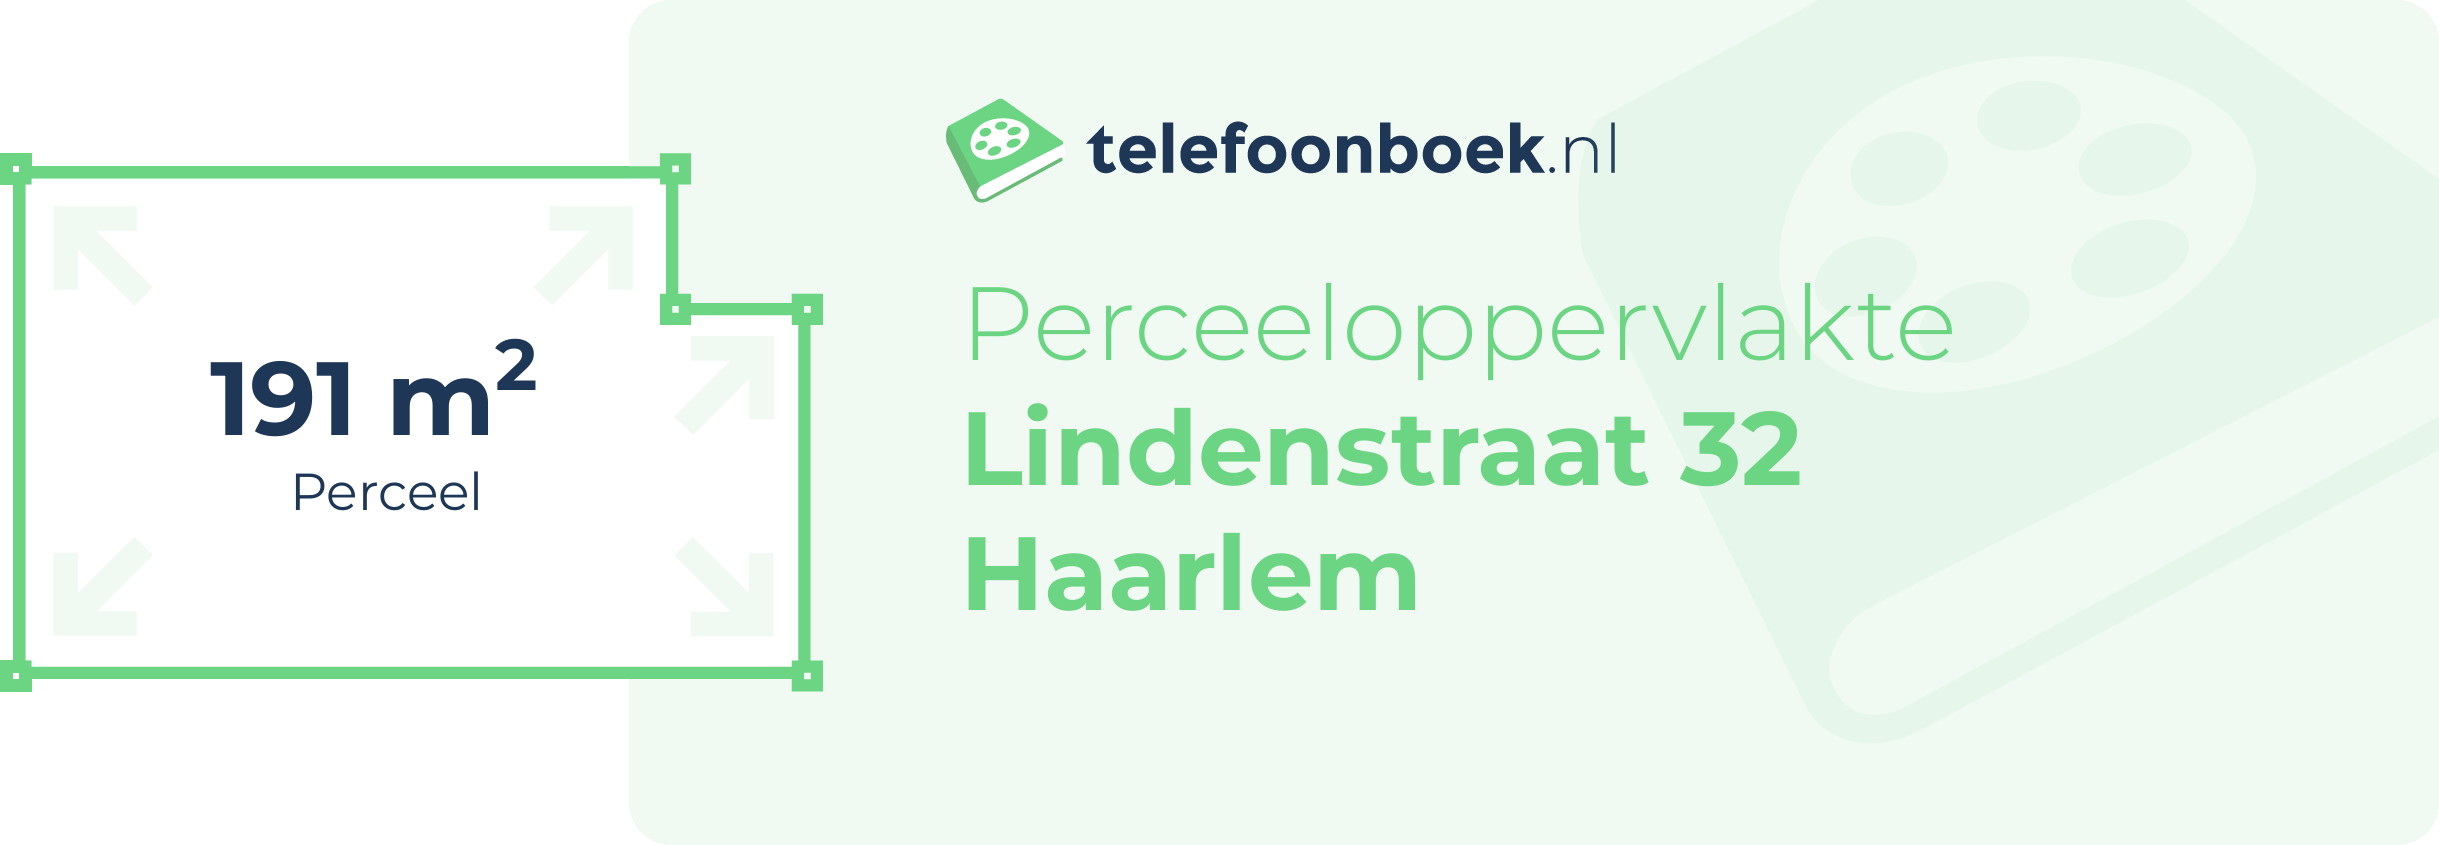 Perceeloppervlakte Lindenstraat 32 Haarlem